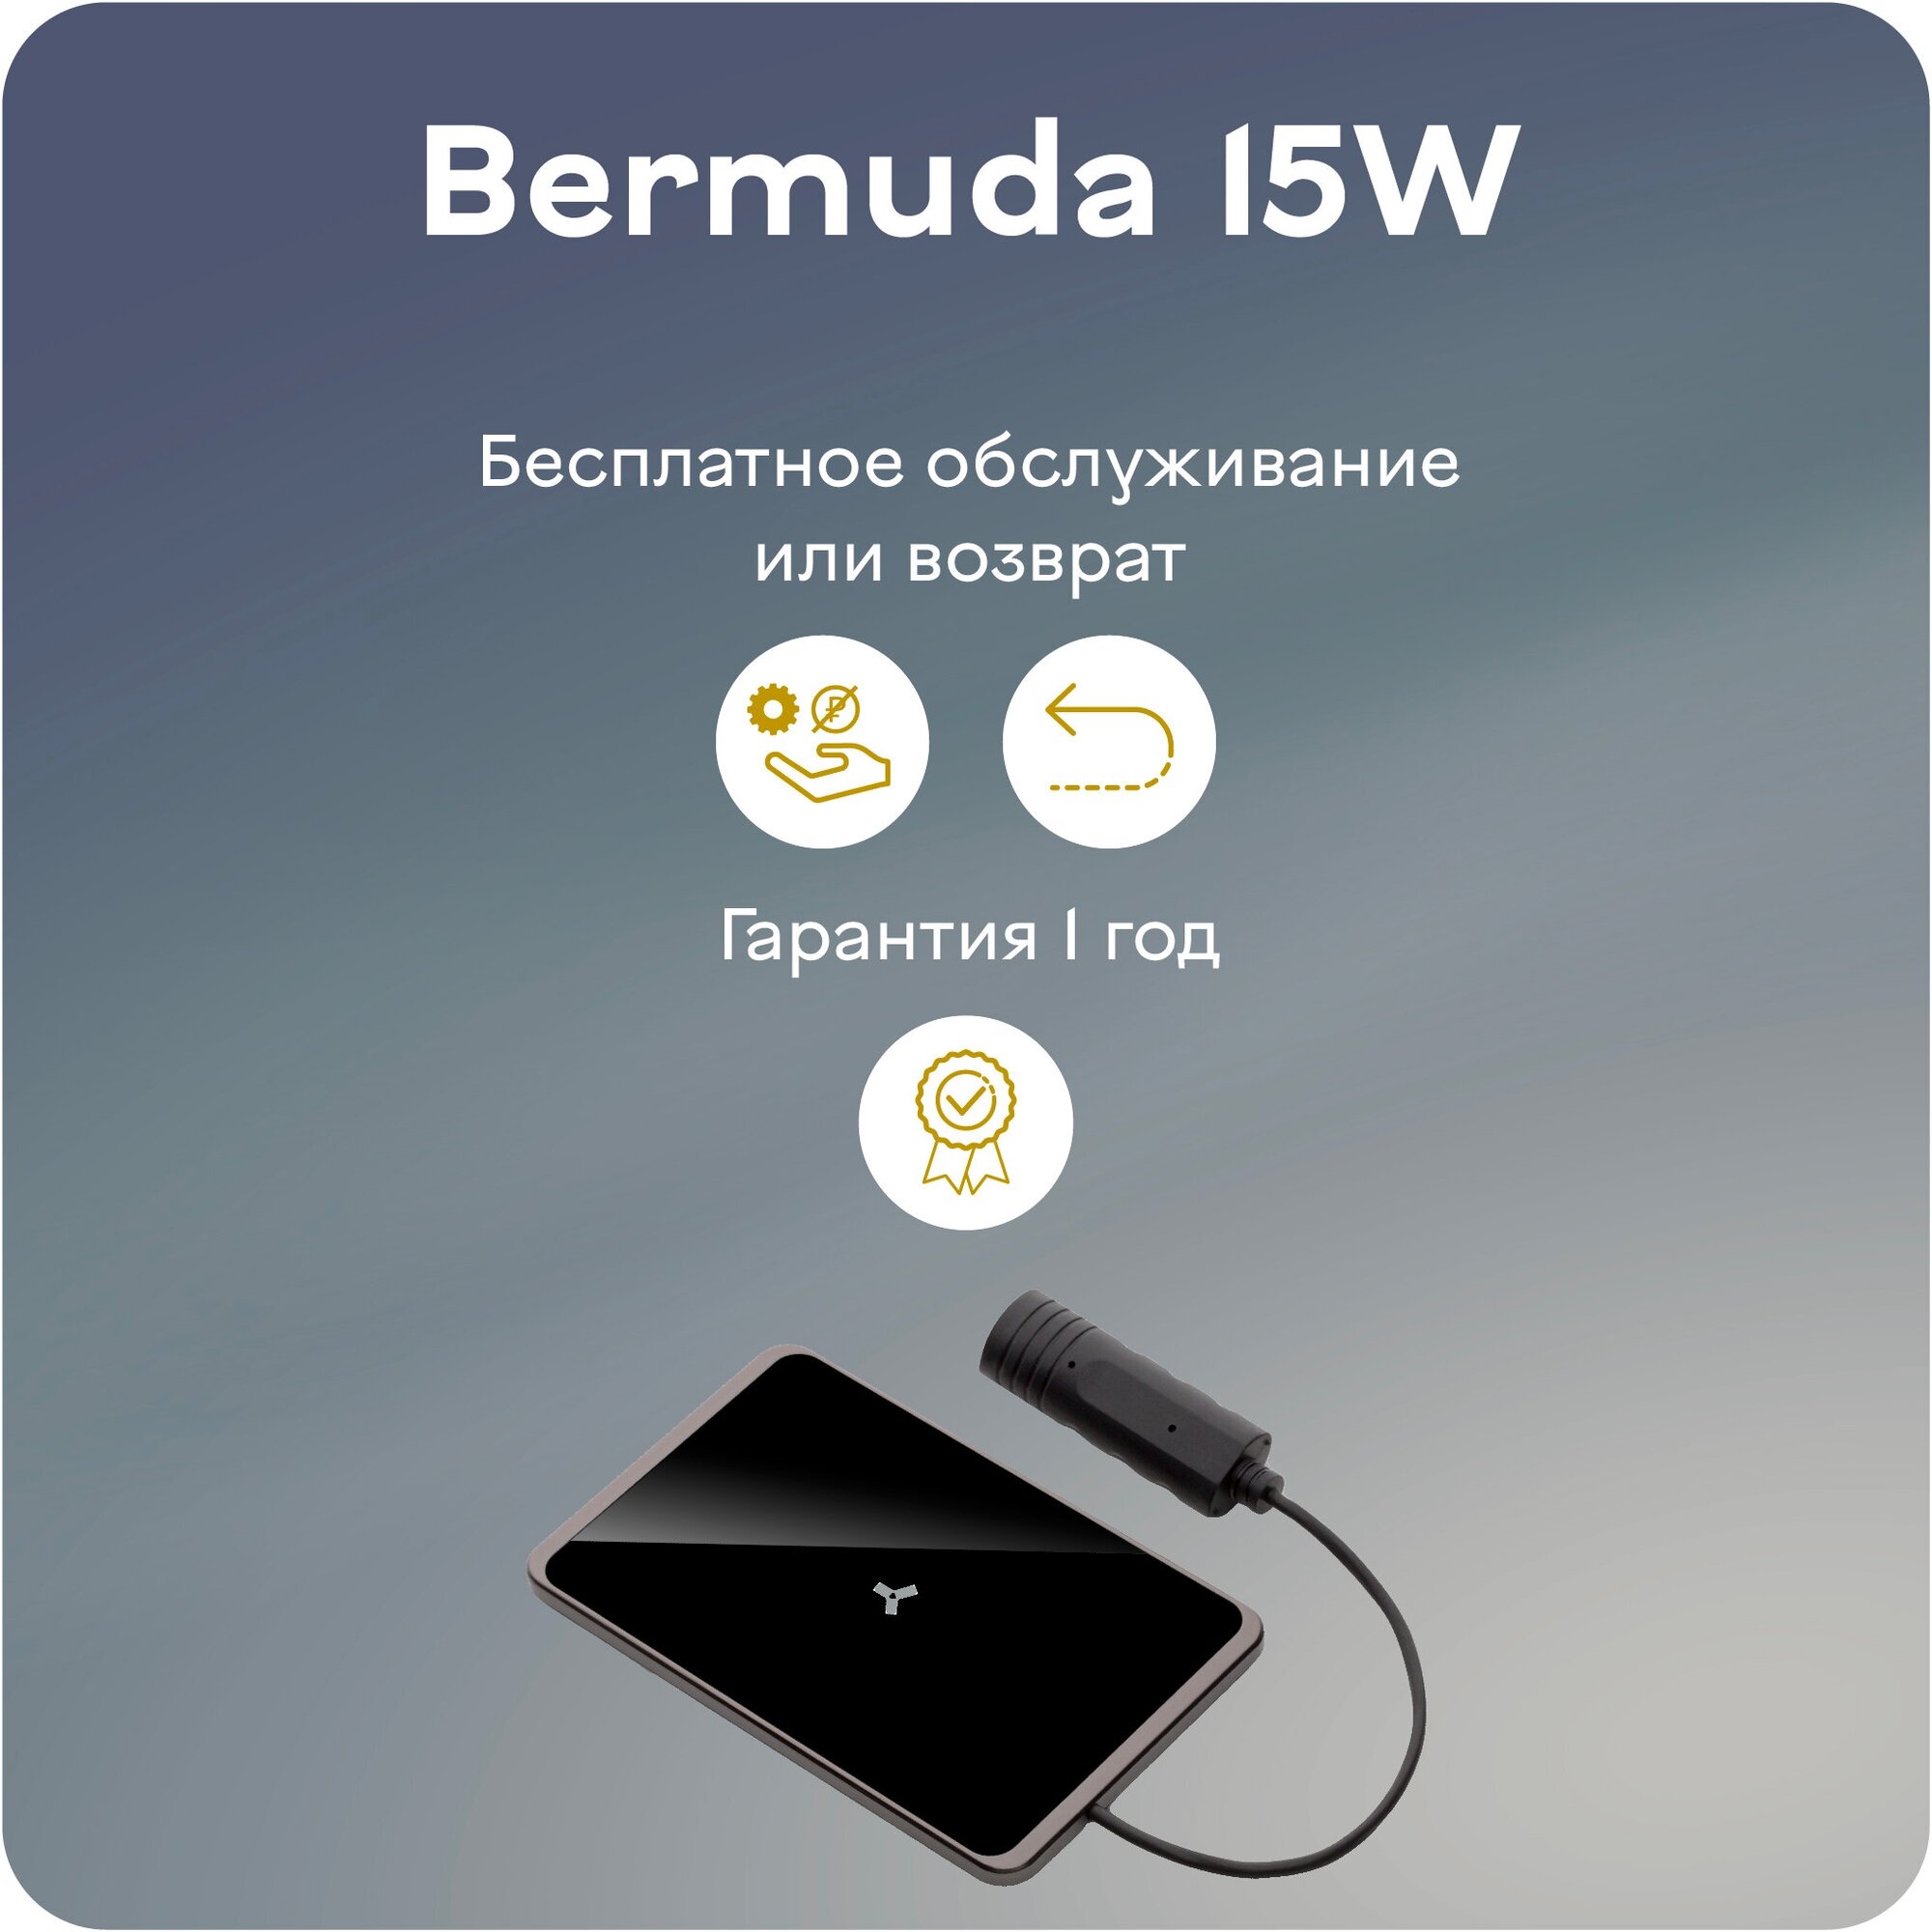 Беспроводное зарядное устройство Accesstyle Bermuda 15W, USB type-C, 2A, черный Noname - фото №4